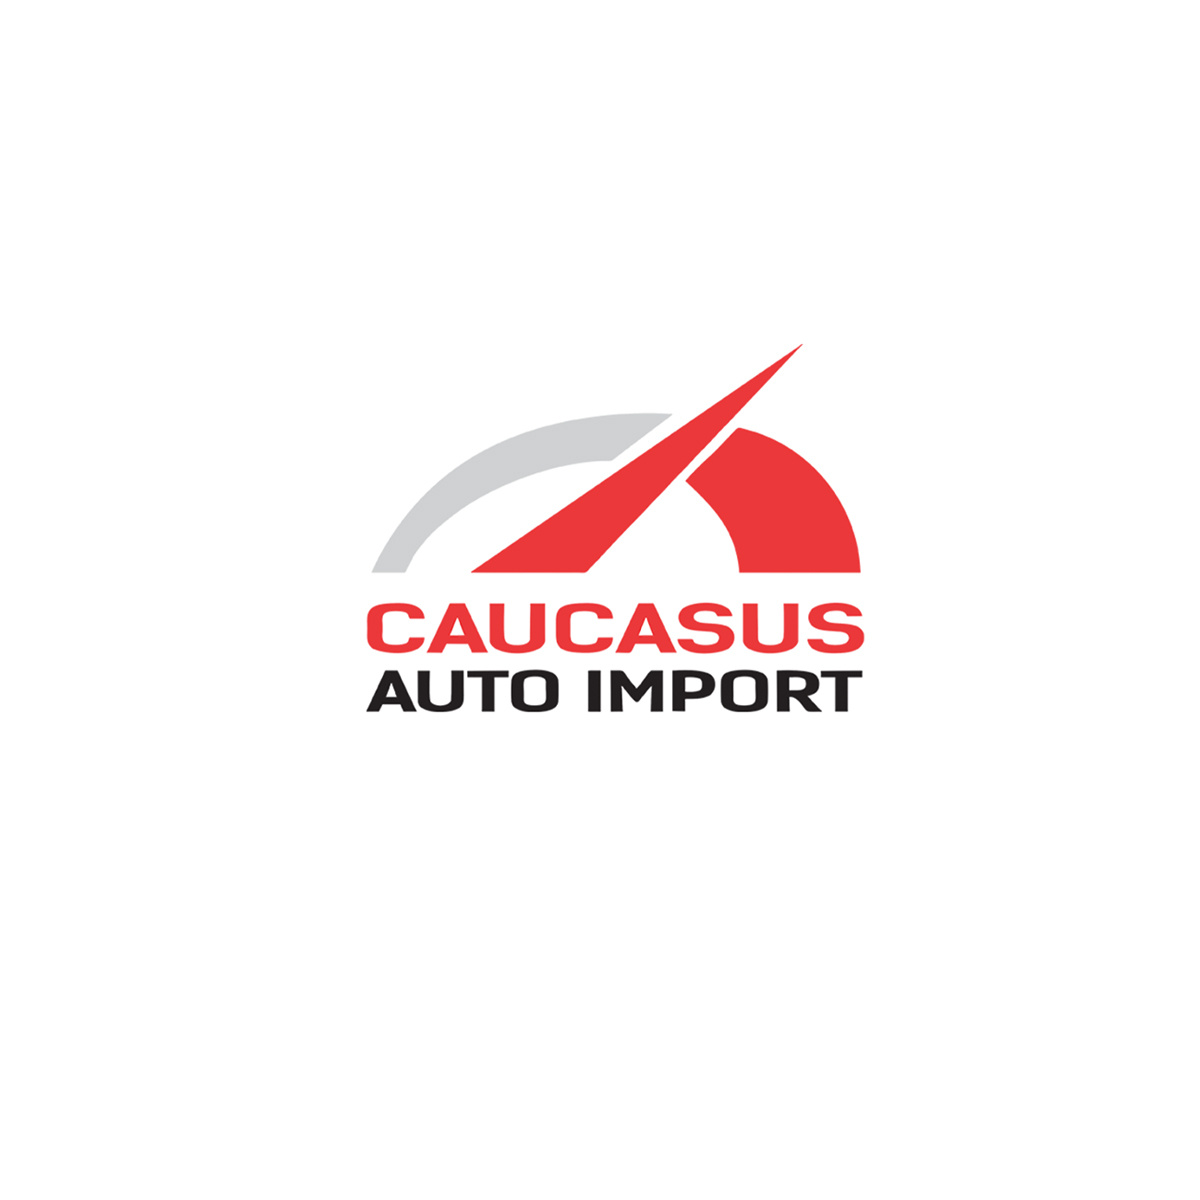 Caucasus Auto Import -v Sizə keyfiyyət təqdim edirik